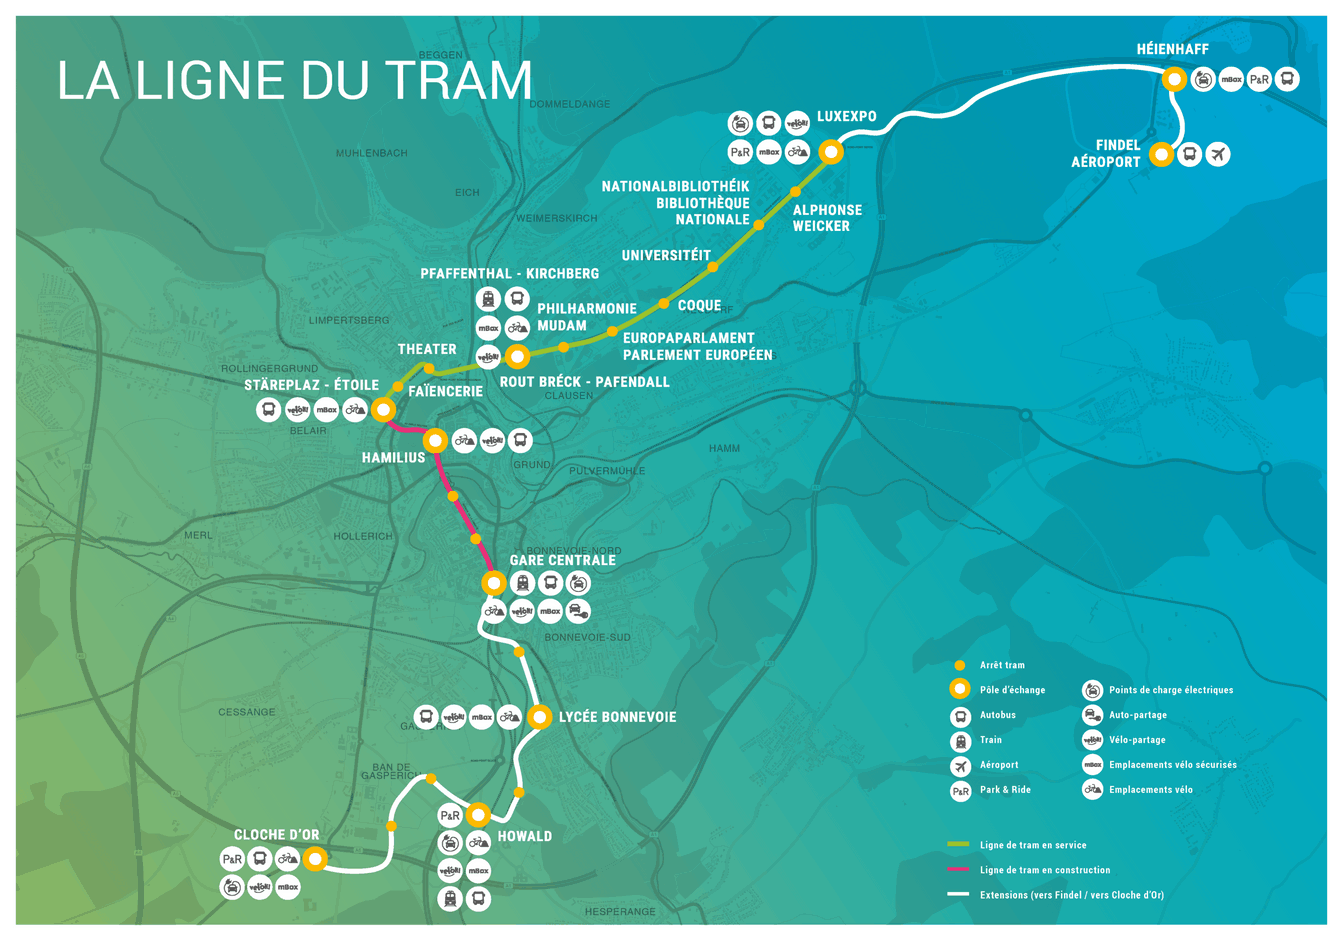 Le réseau de tram devrait à terme relier l’aéroport à la Cloche d’Or en passant par le centre de la ville. (Photo: Luxtram)